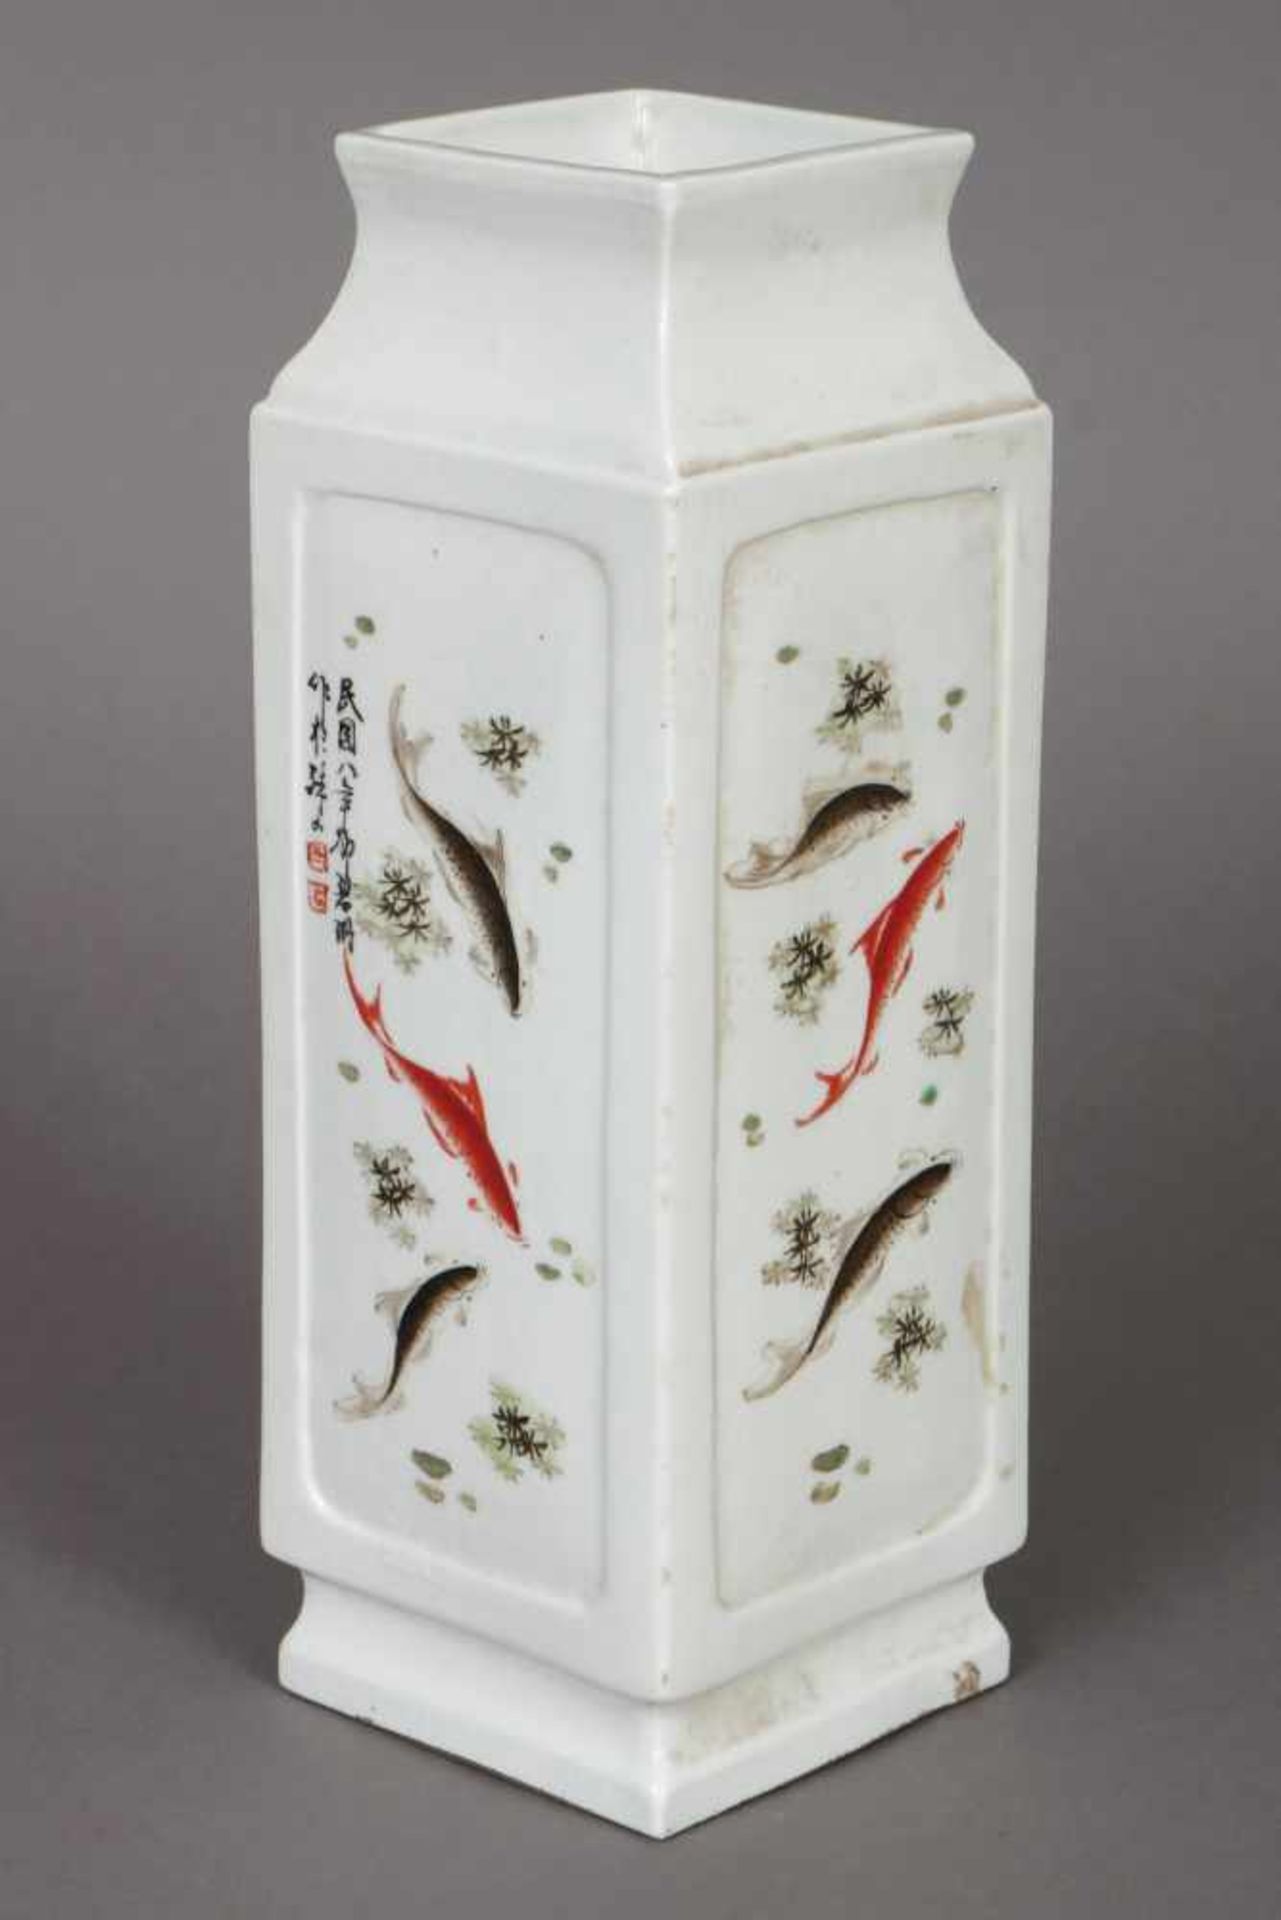 Asiatische Vierkantvase Porzellan, hochrechteckiger Korpus, weiß glasiert, allseitig mit Koi-